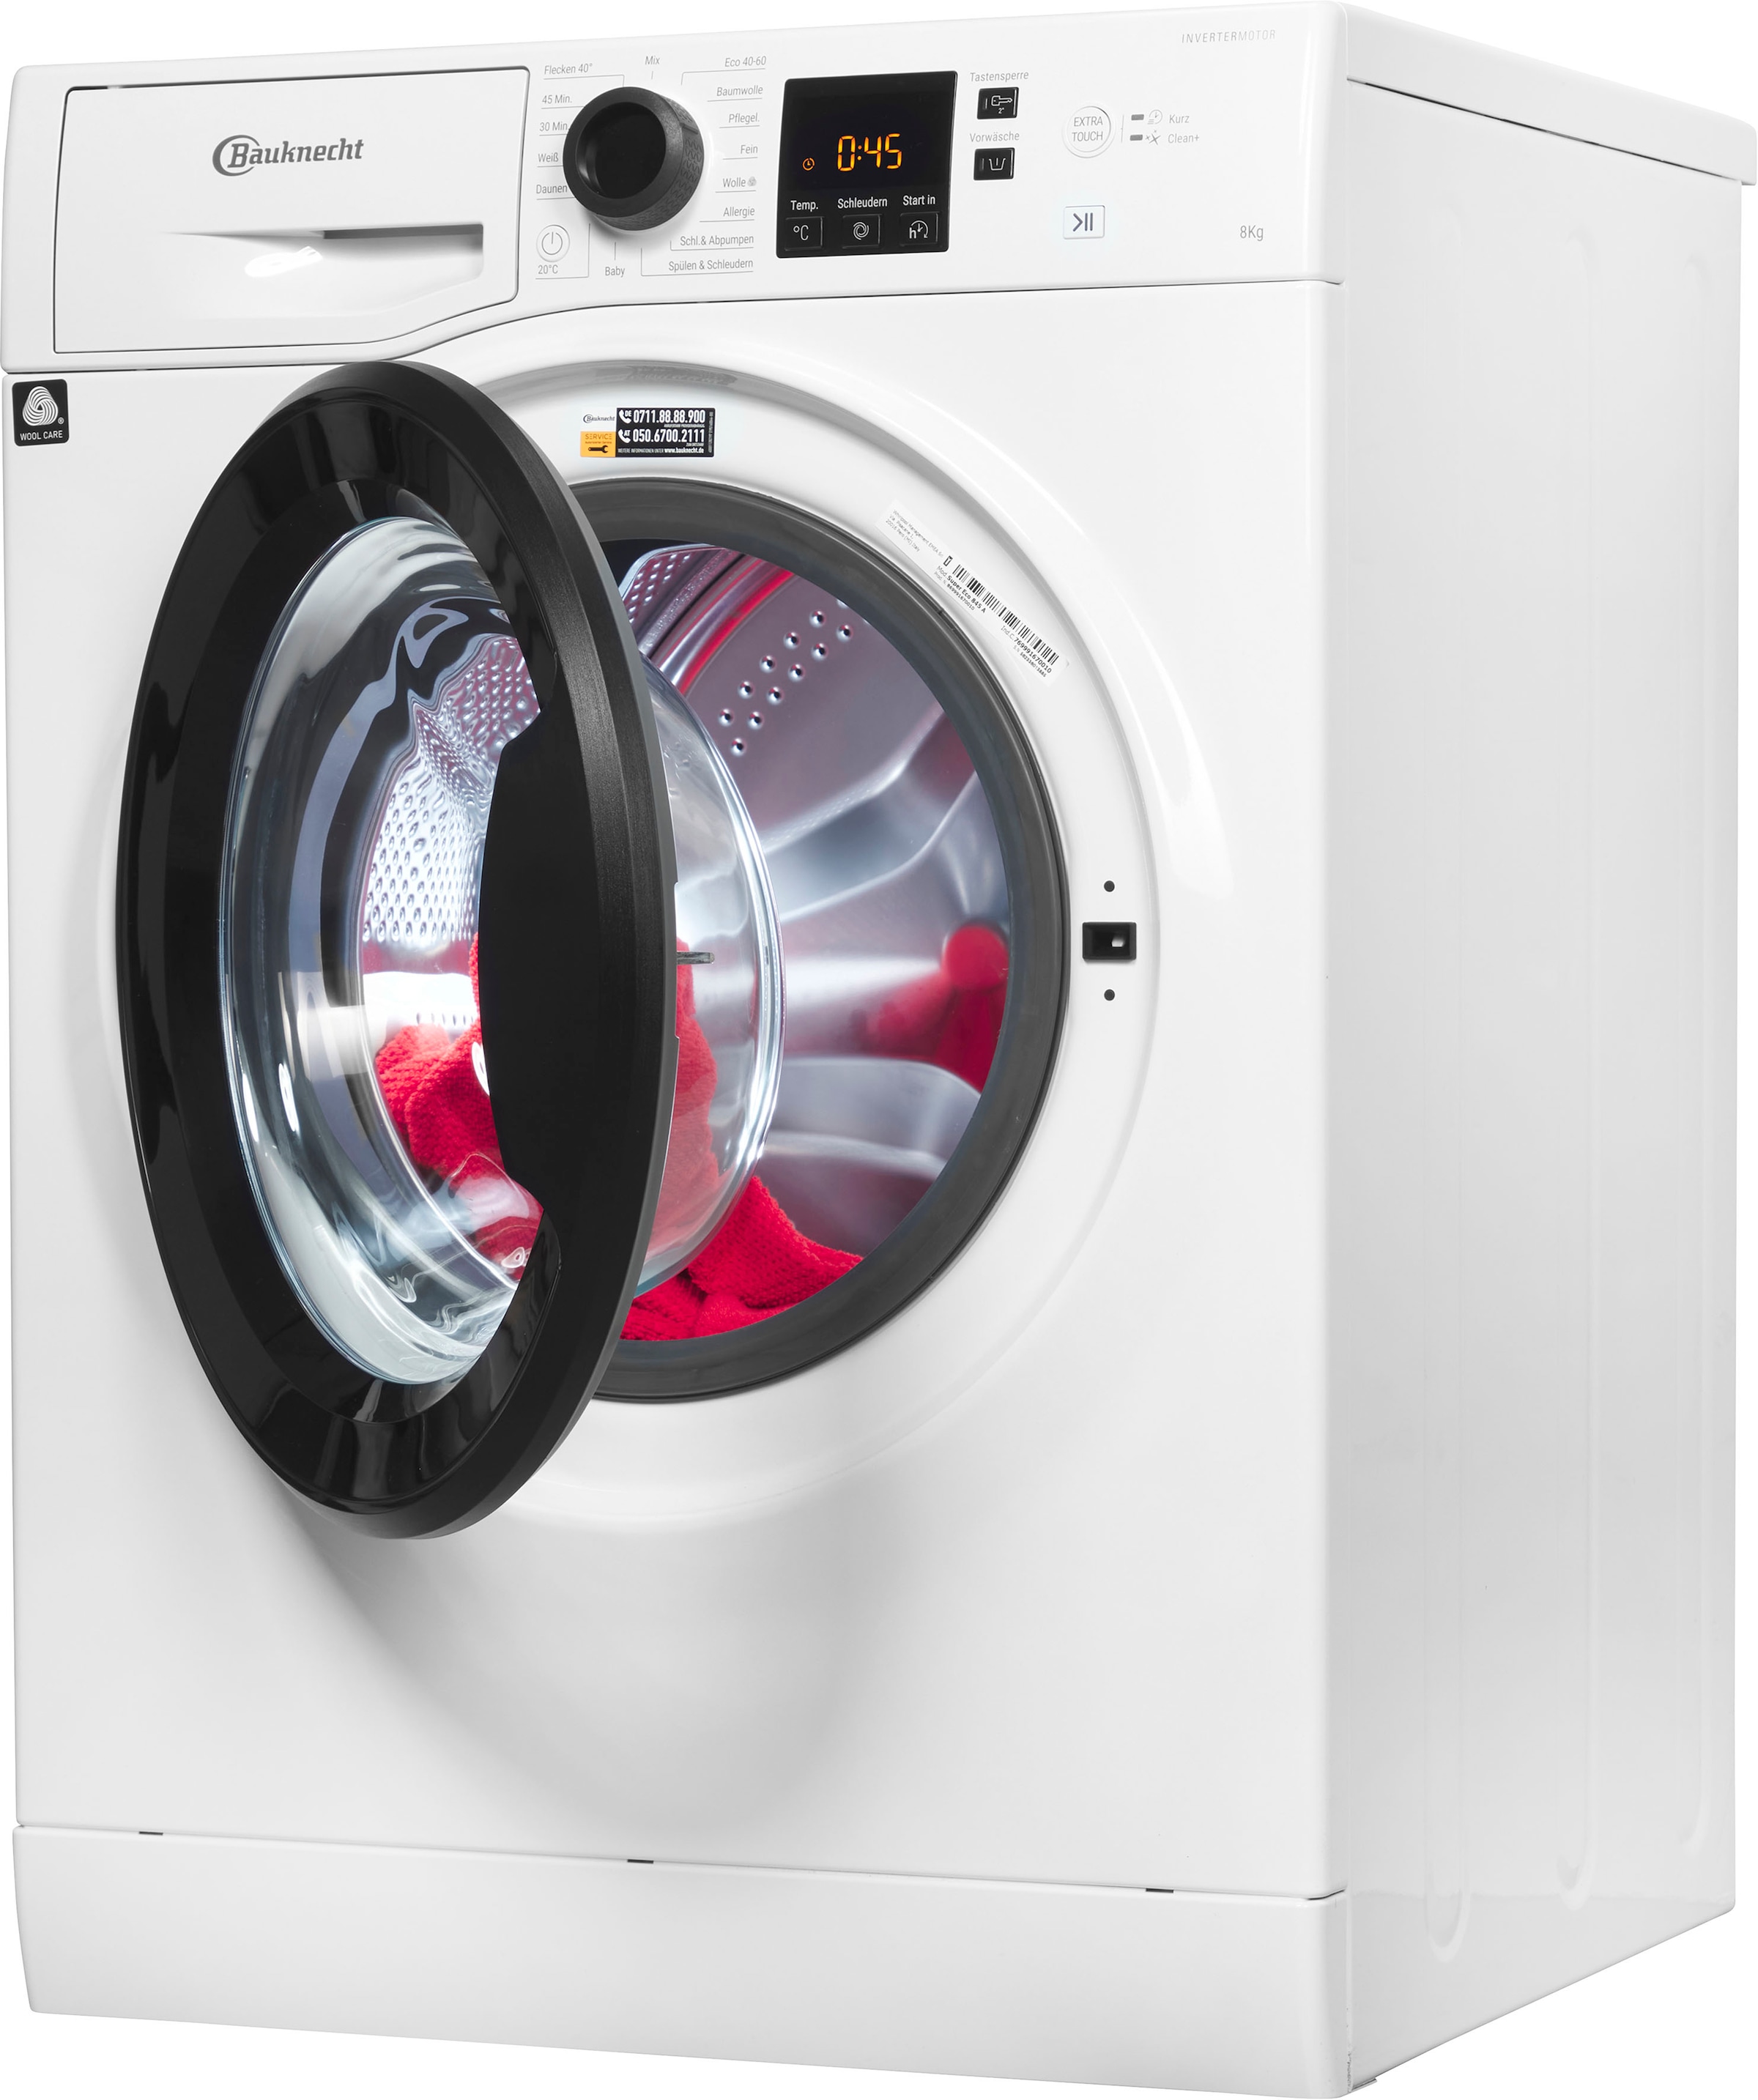 BAUKNECHT Waschmaschine »Super Eco 845 A«, Super Eco 845 A, 8 kg, 1400 U/min,  4 Jahre Herstellergarantie bei OTTO